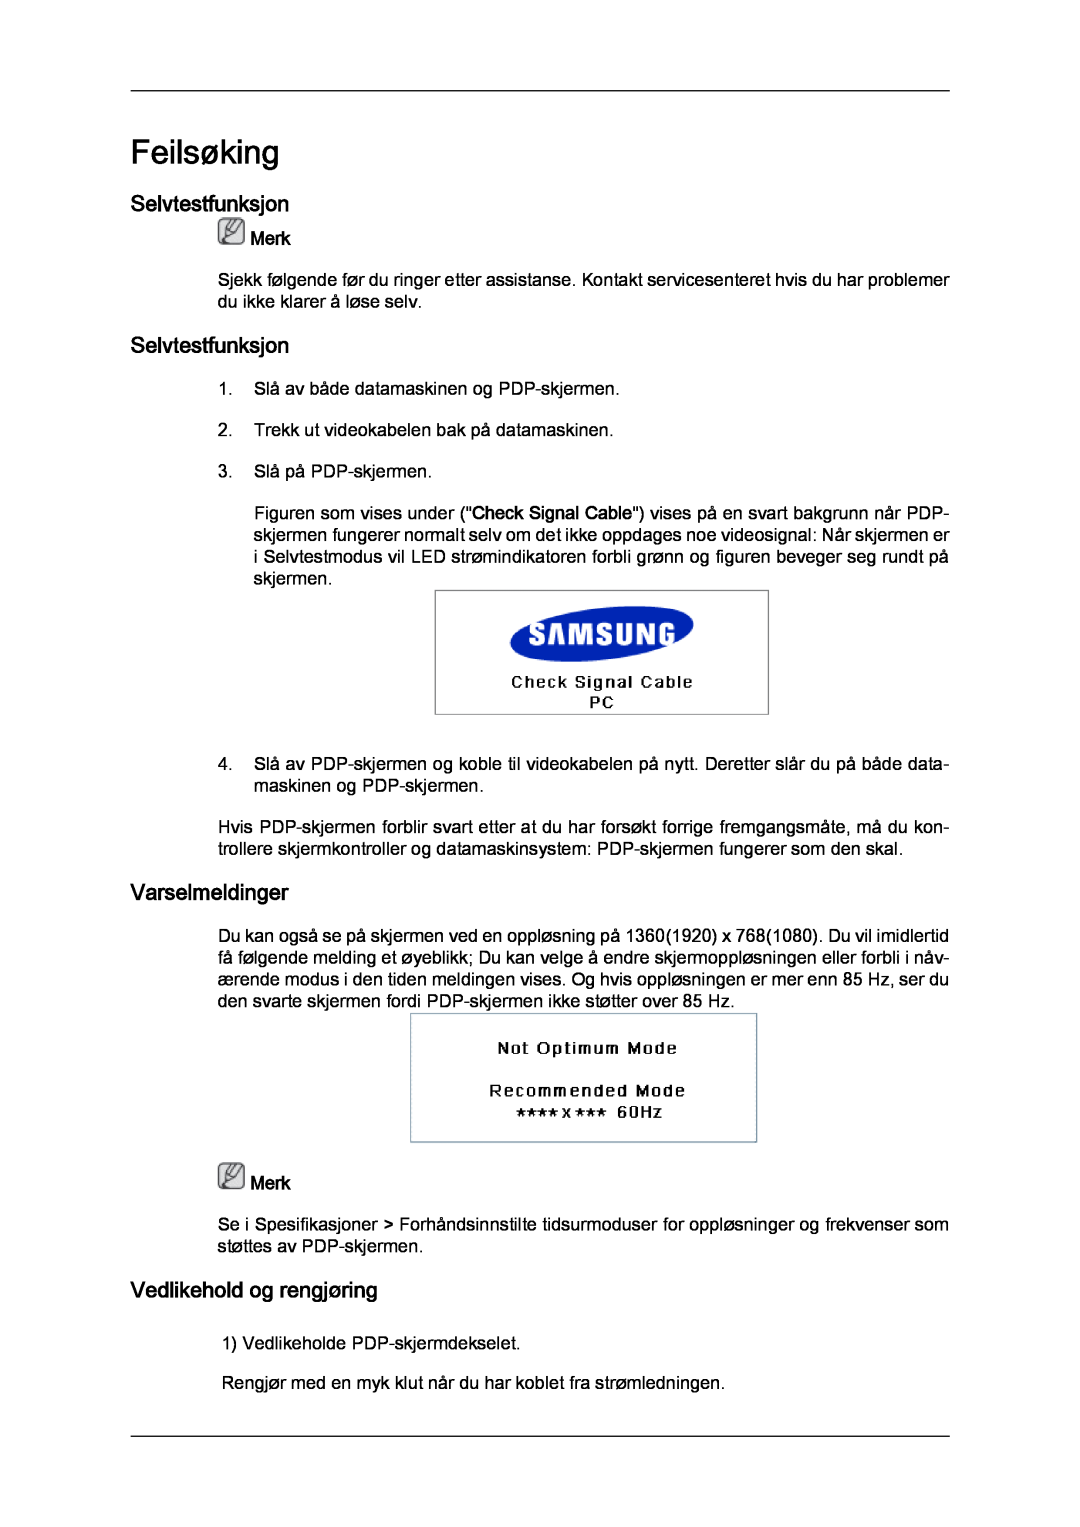 Samsung PH63KPFLBF/EN, PH50KPFLBF/EN manual Feilsøking, Selvtestfunksjon, Varselmeldinger, Vedlikehold og rengjøring, Merk 